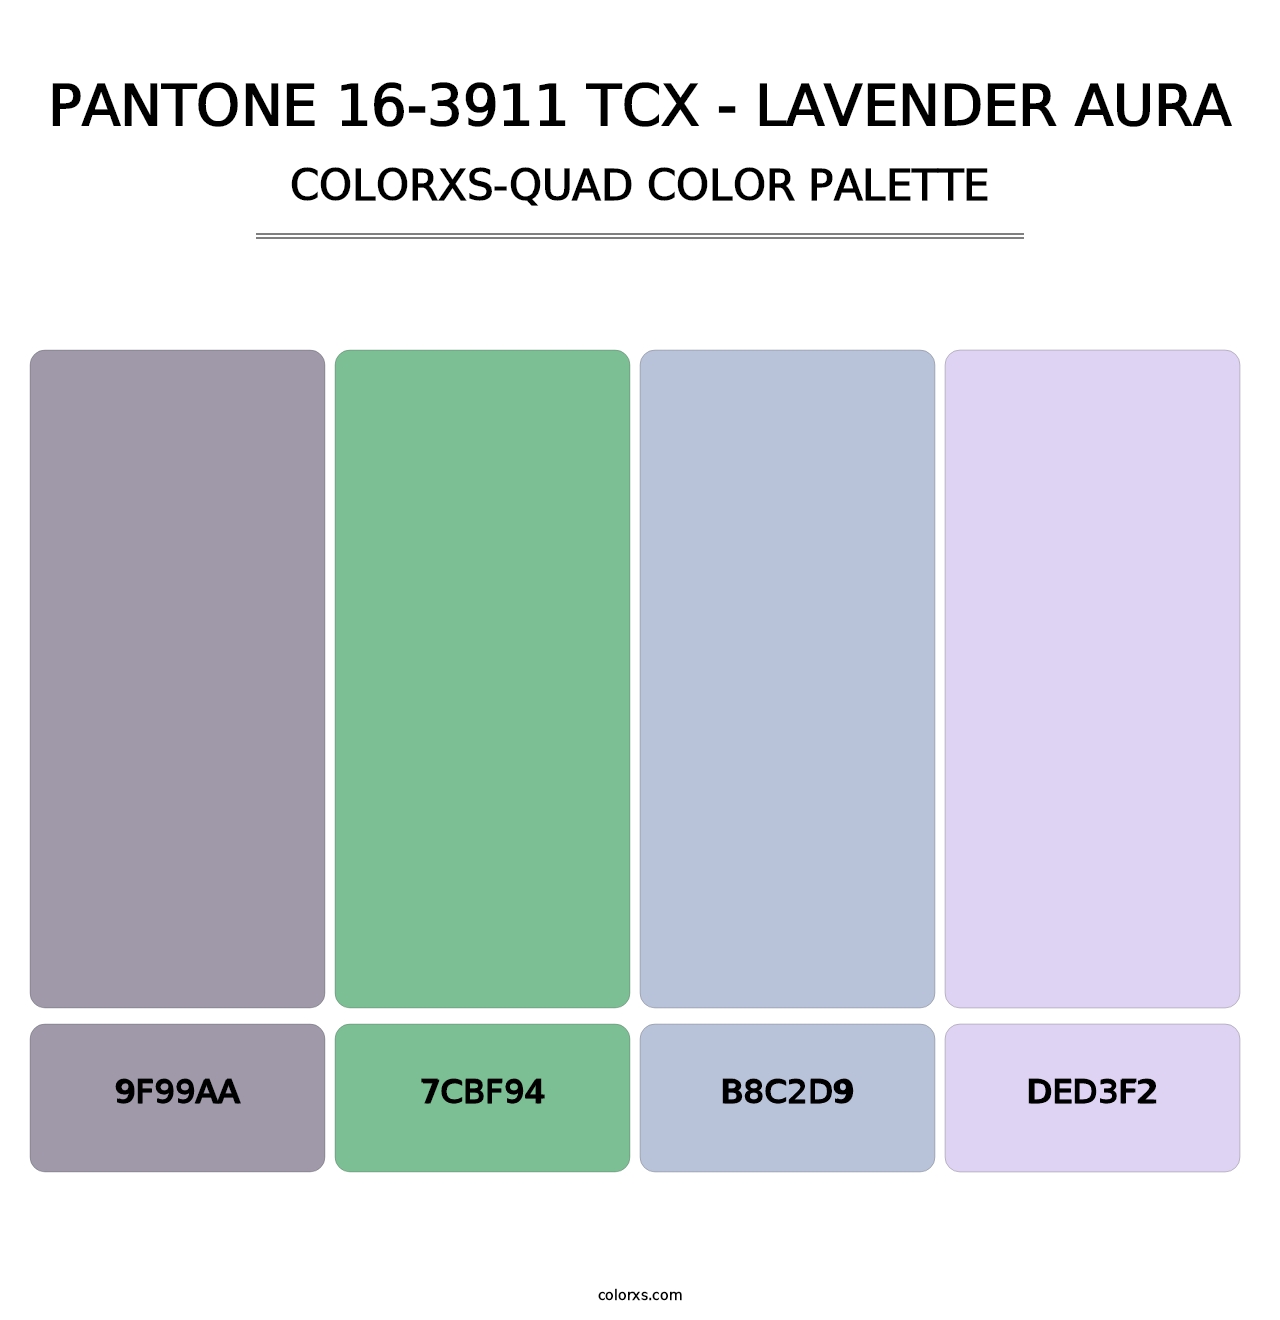 PANTONE 16-3911 TCX - Lavender Aura - Colorxs Quad Palette